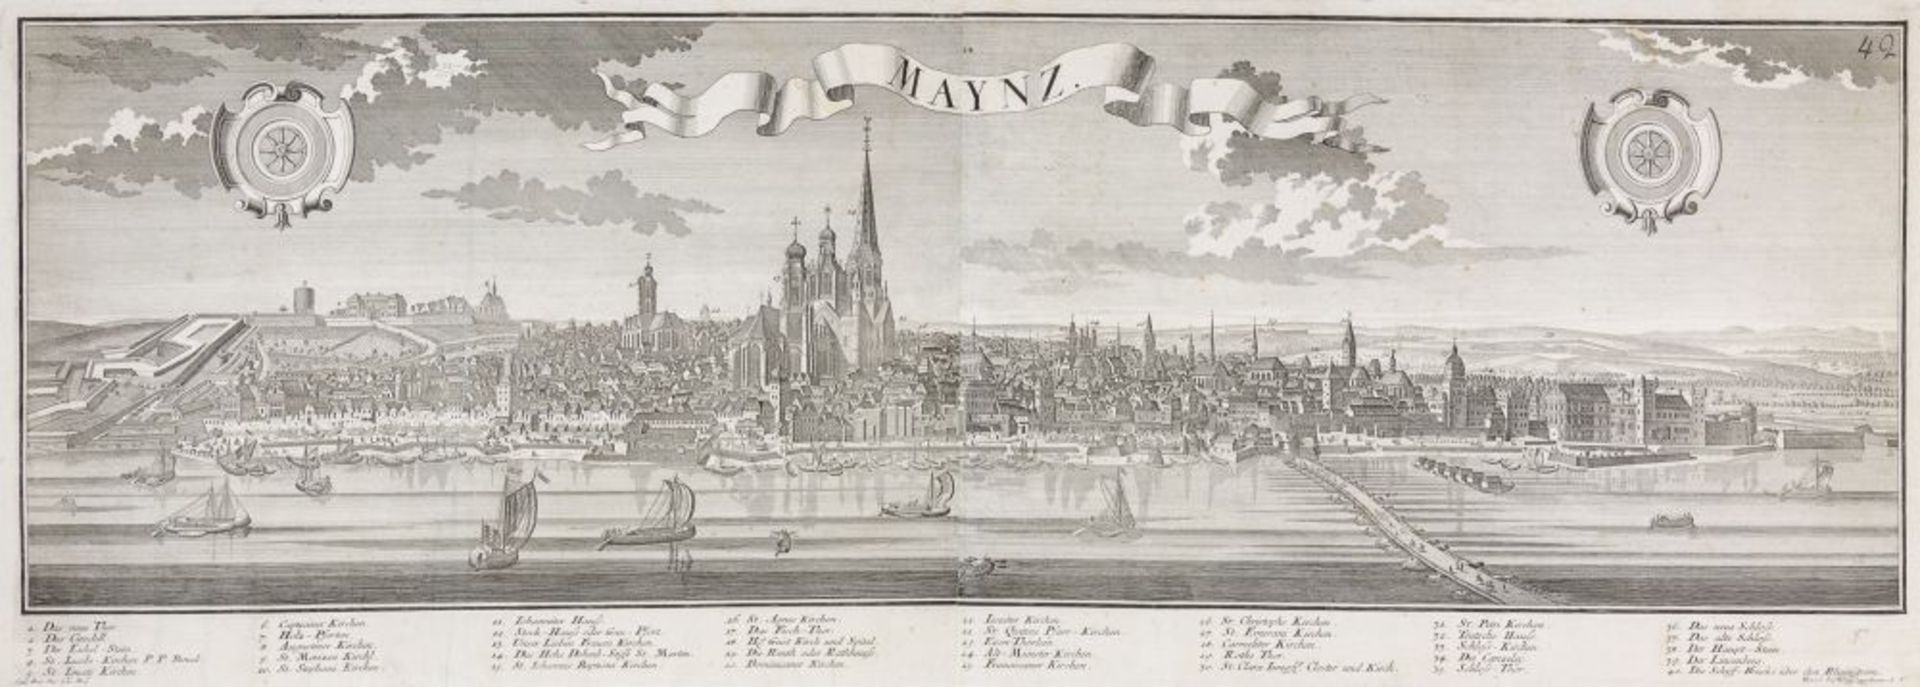 Ansichten - Mainz - - Maynz. Große Gesamtansicht von vorne mit Schiffen und rechts Pontonbrücke im